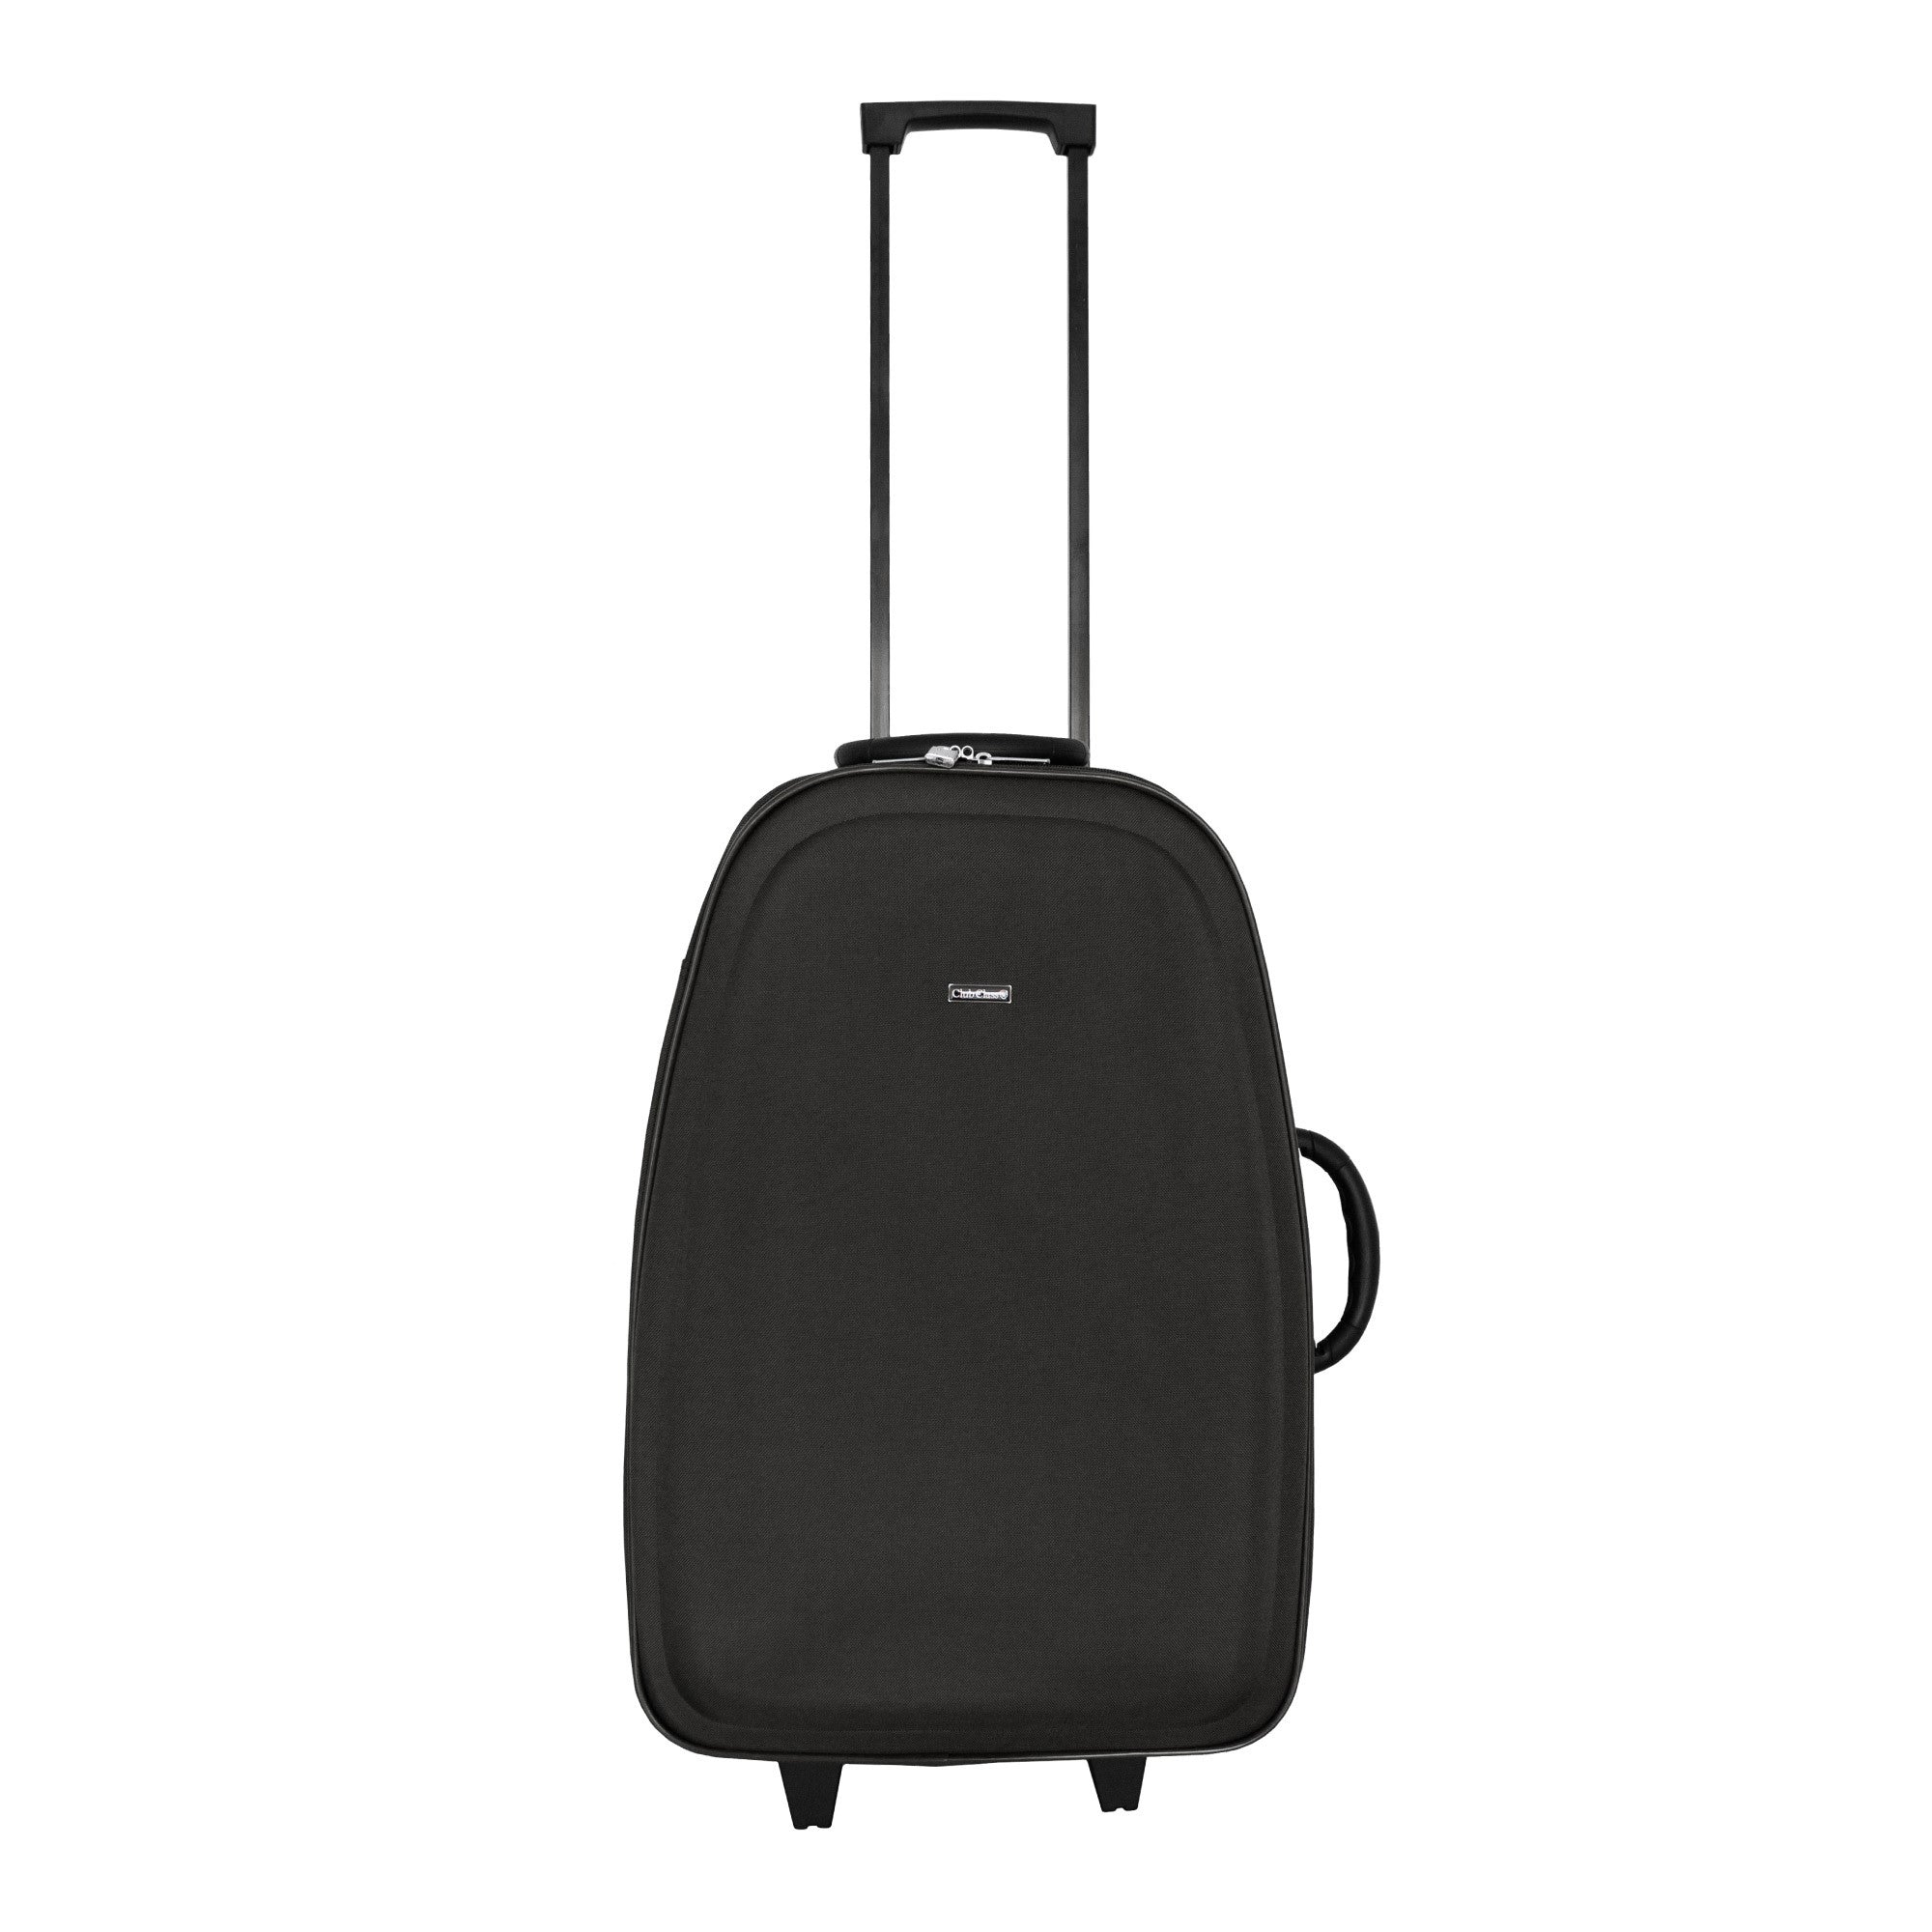 Club Class Luggage 600D EVA Suitcase - Black - Medium  | TJ Hughes